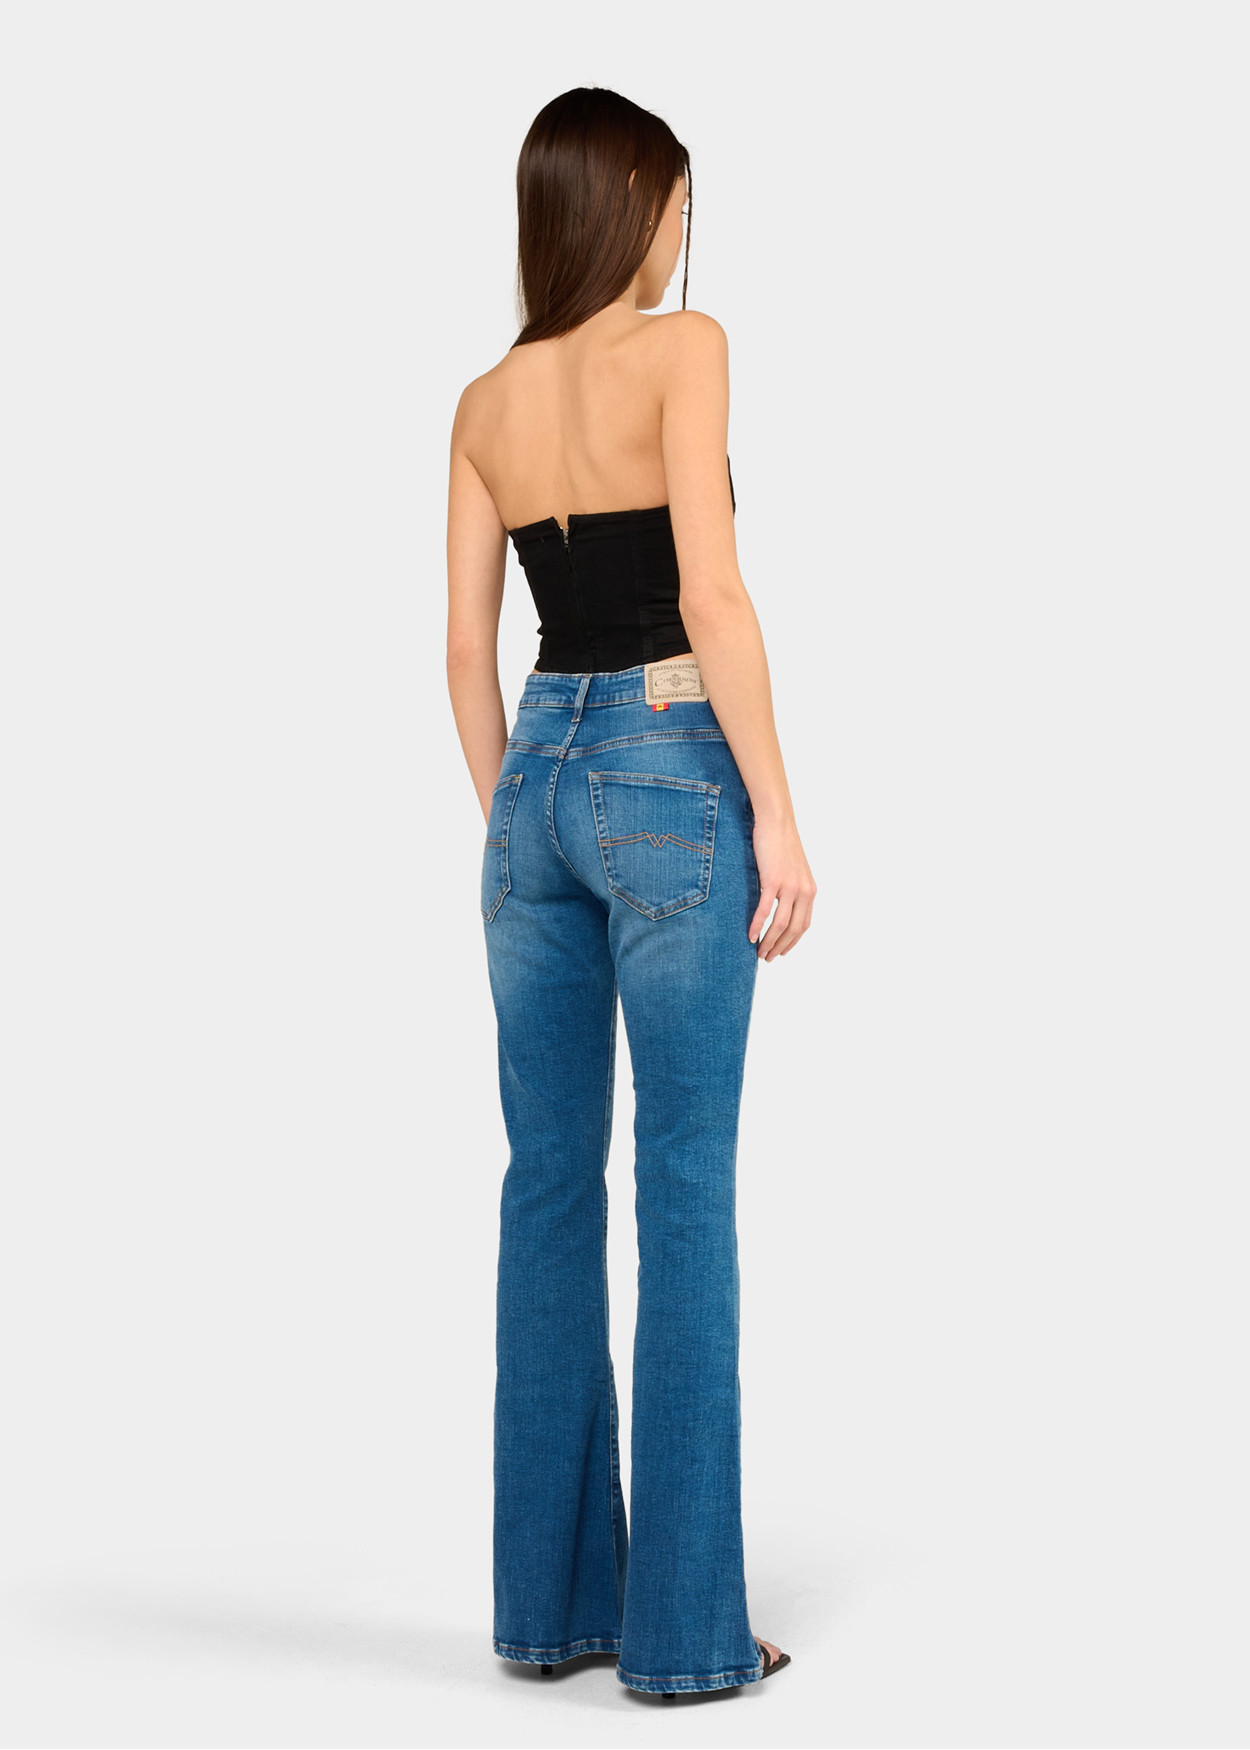 CARLA-ARIANE - Jeans - Flare - Manches longues Bleach | Taille en pouces Cimarron